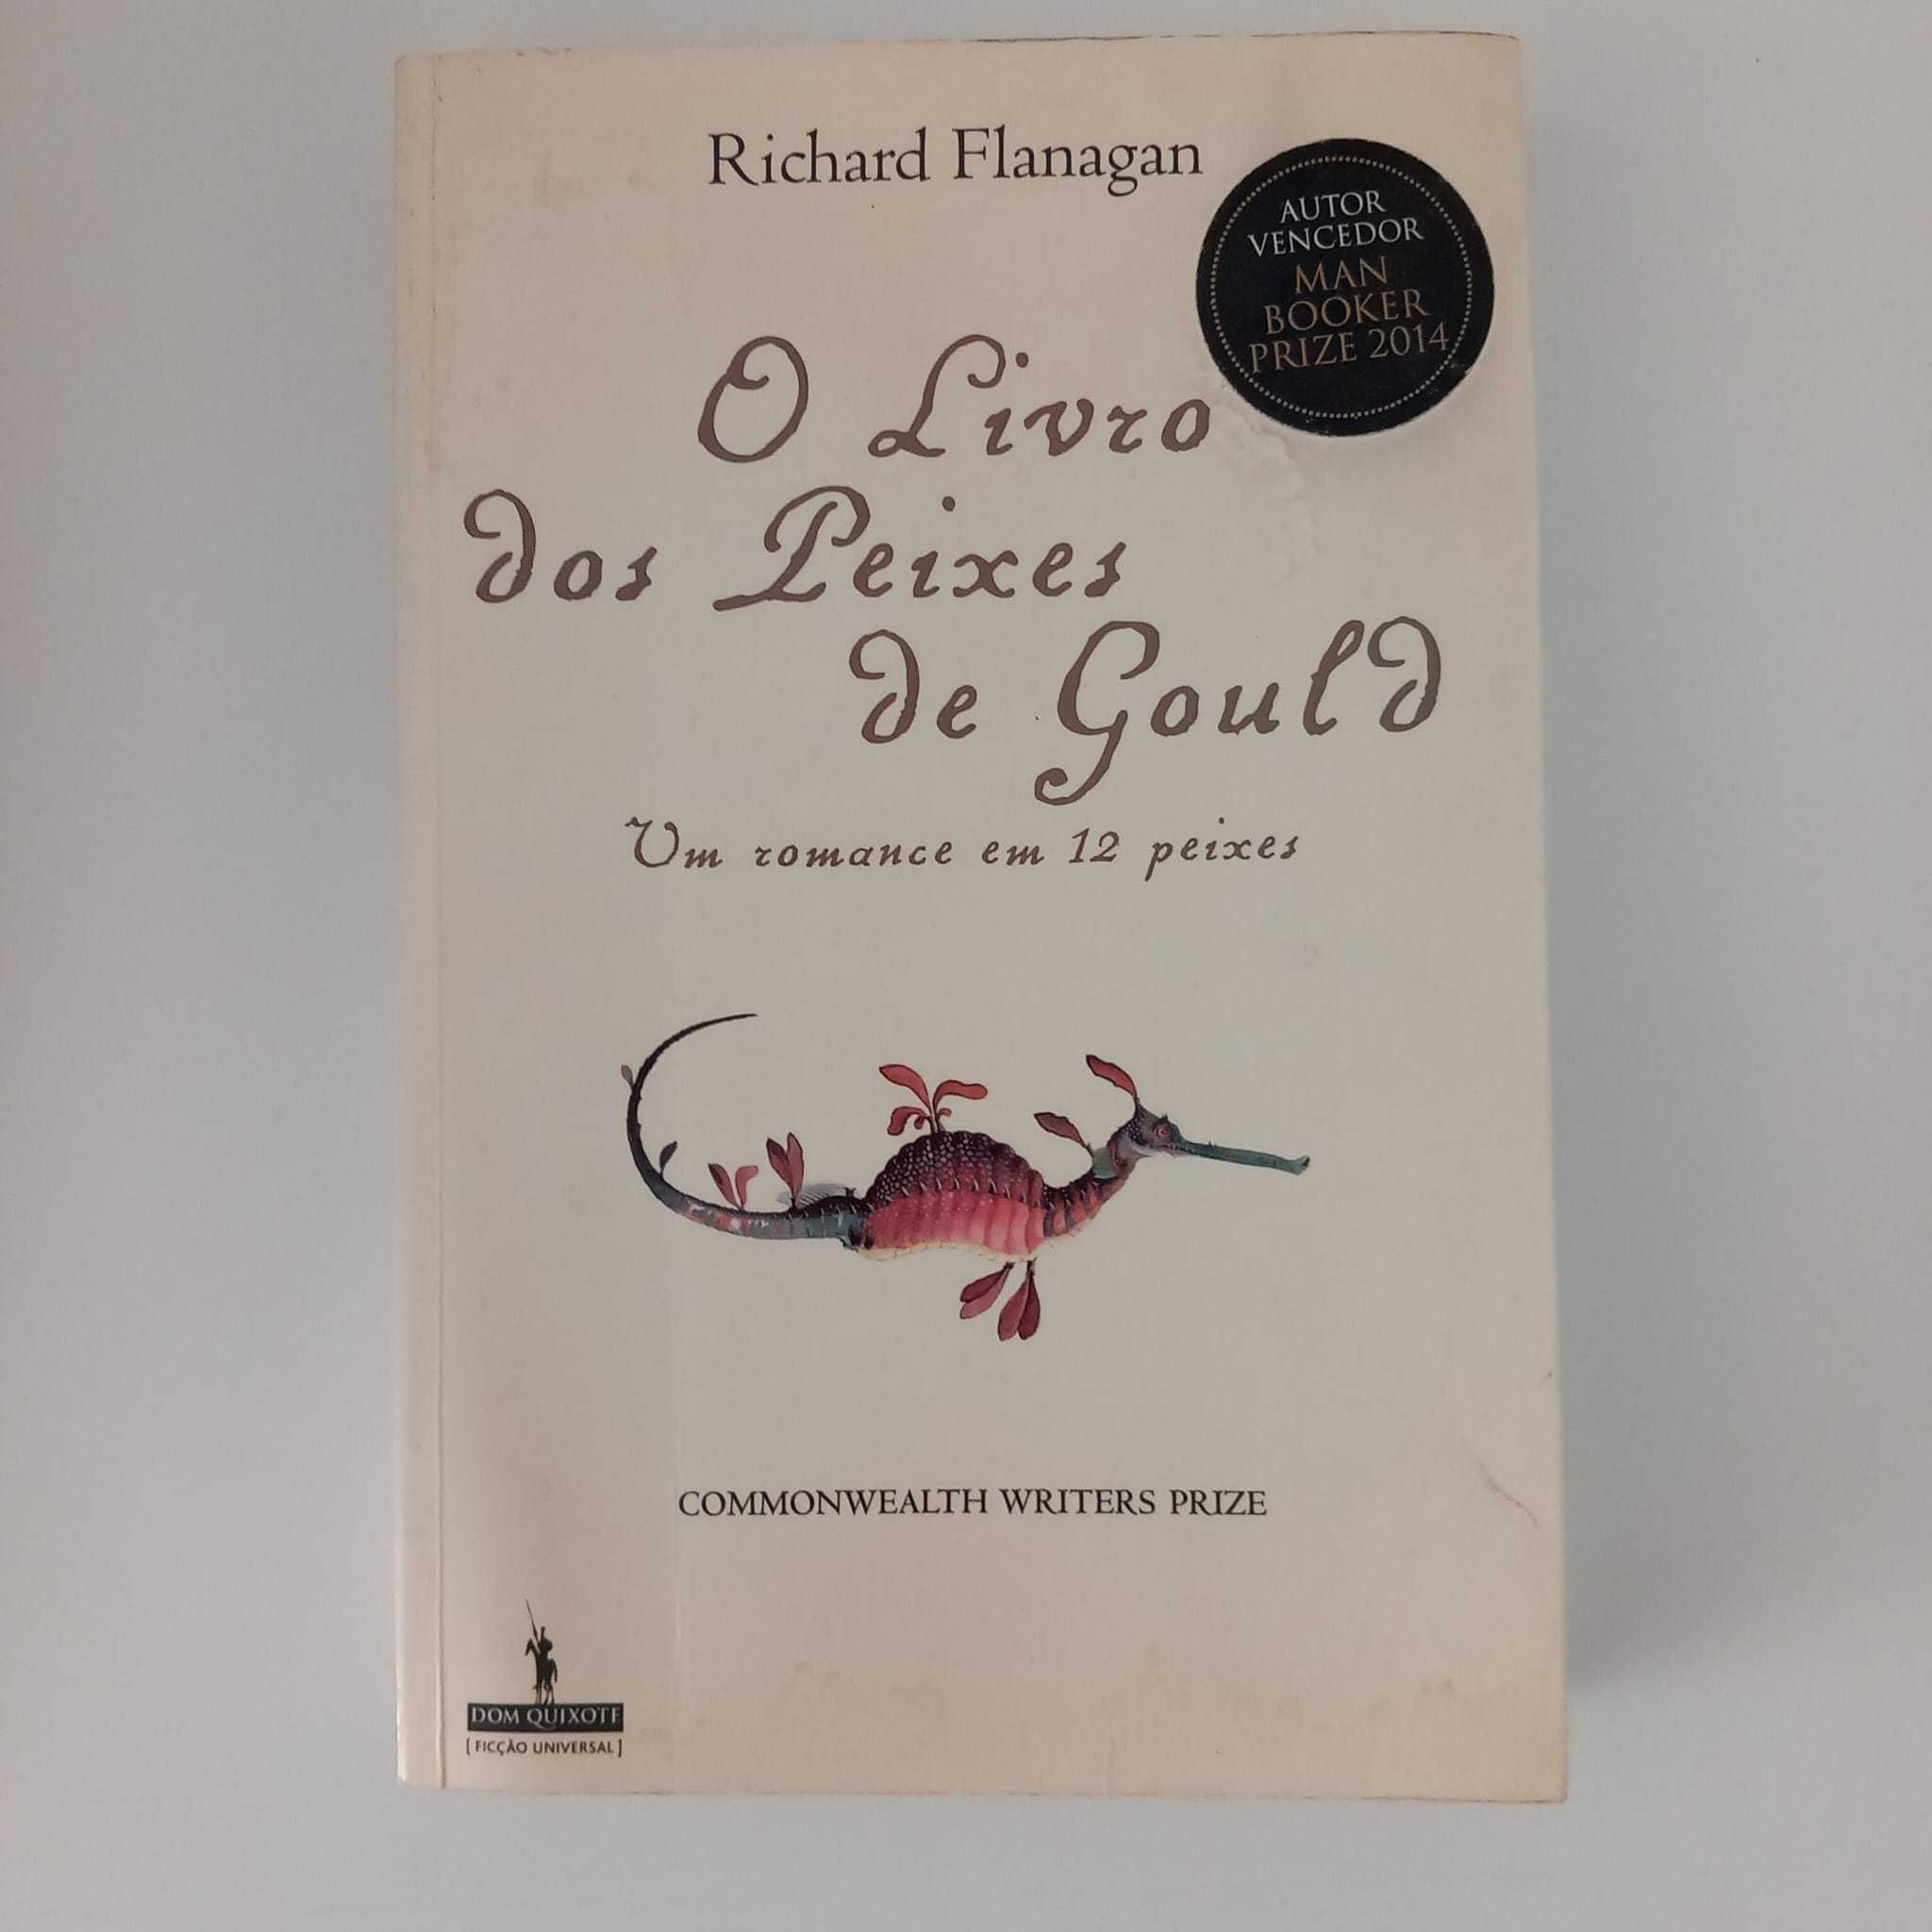 O Livro dos Peixes de Gould de Richard Flanagan 3,5€